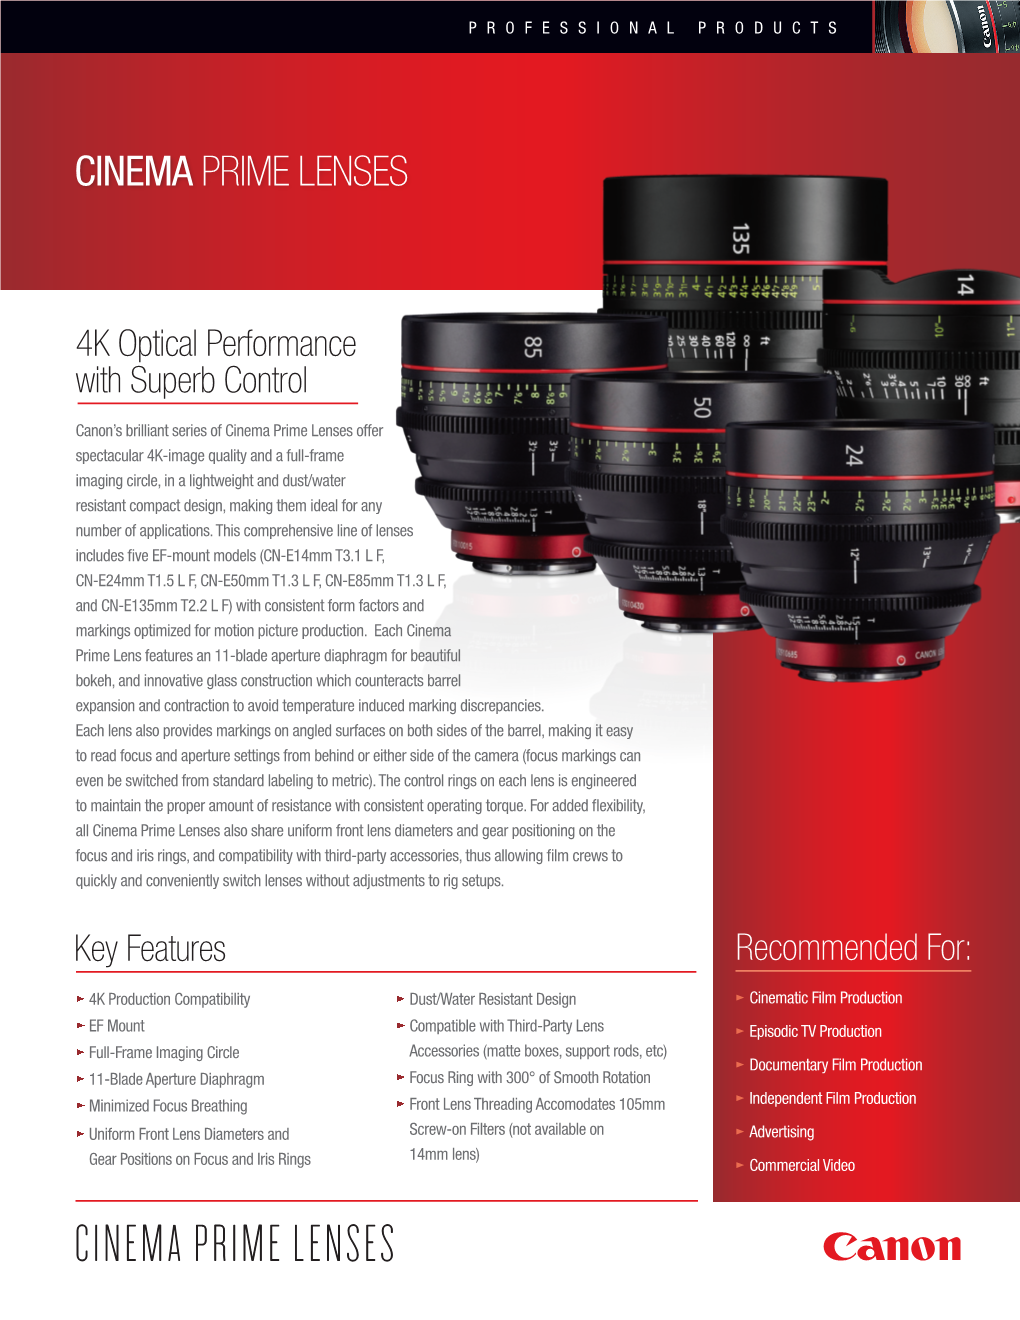 Cinema Prime Lenses